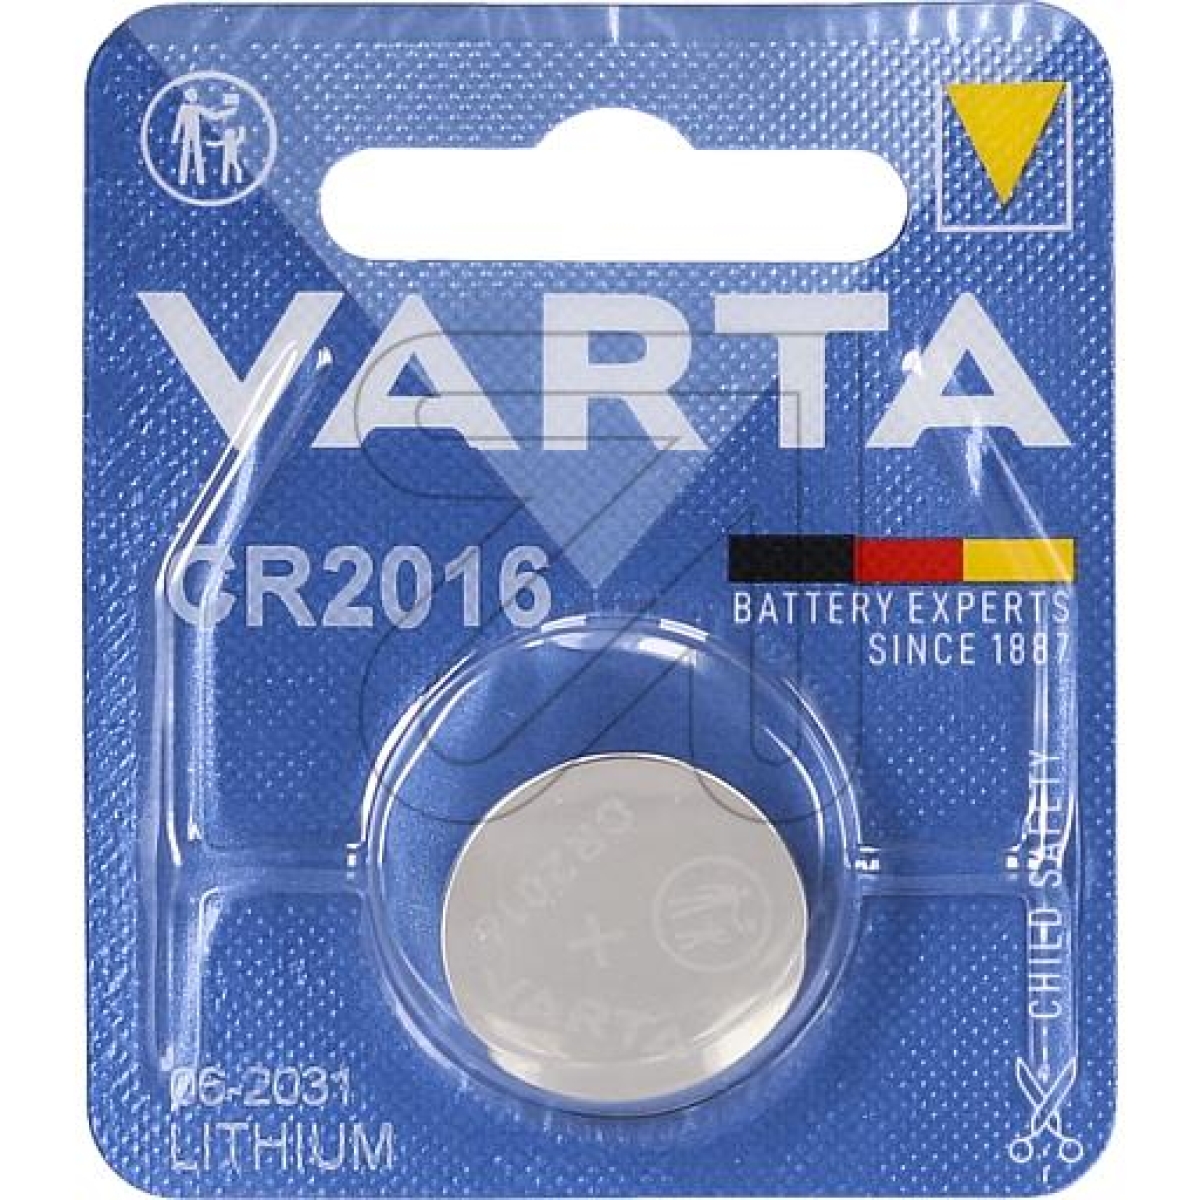 VARTALithium cell Varta CR 2016Article-No: 376960